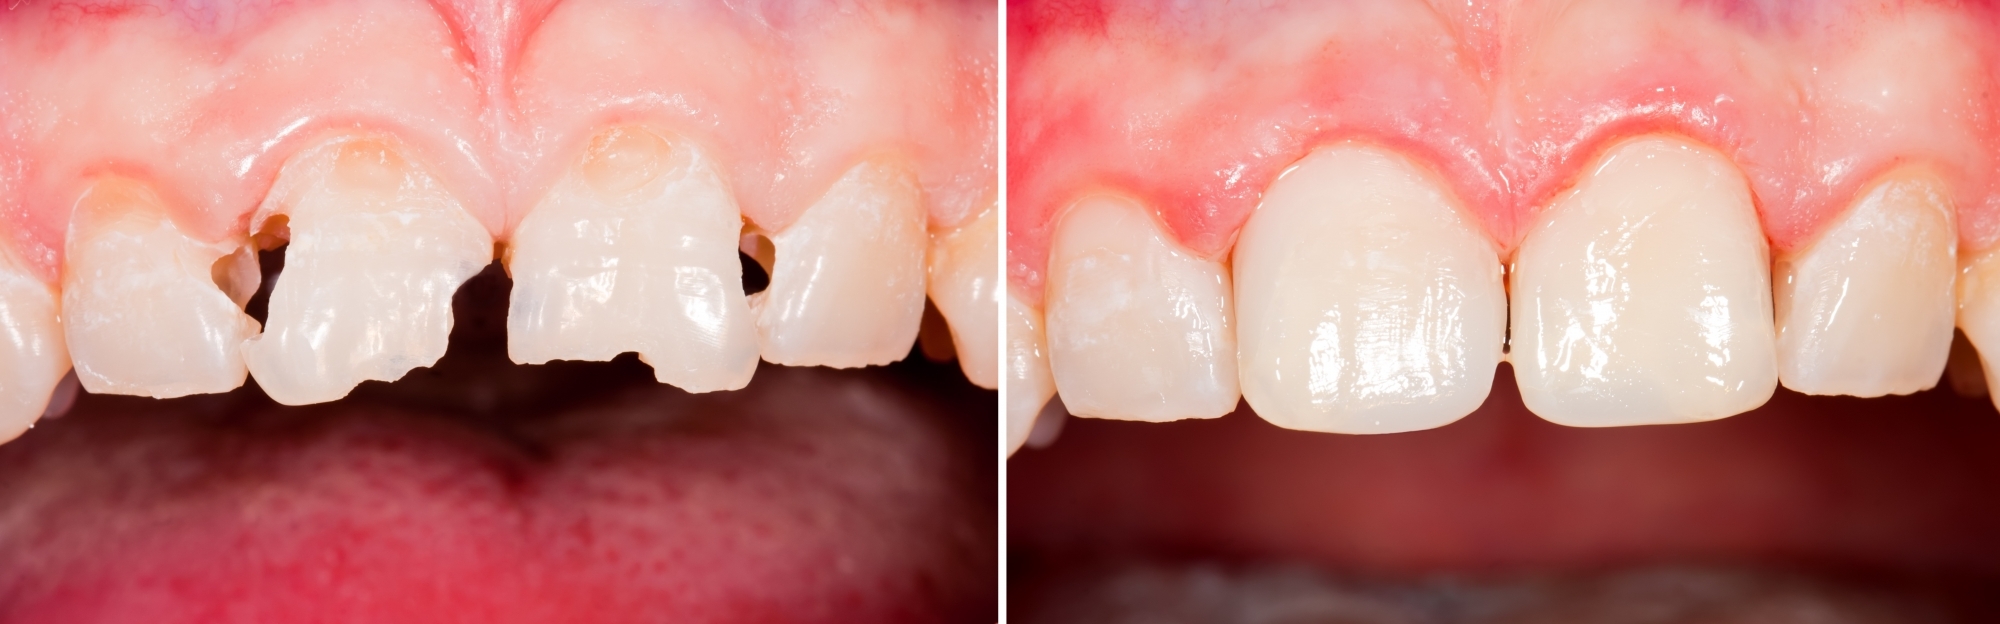 Художественная реставрация зубов фото до и после